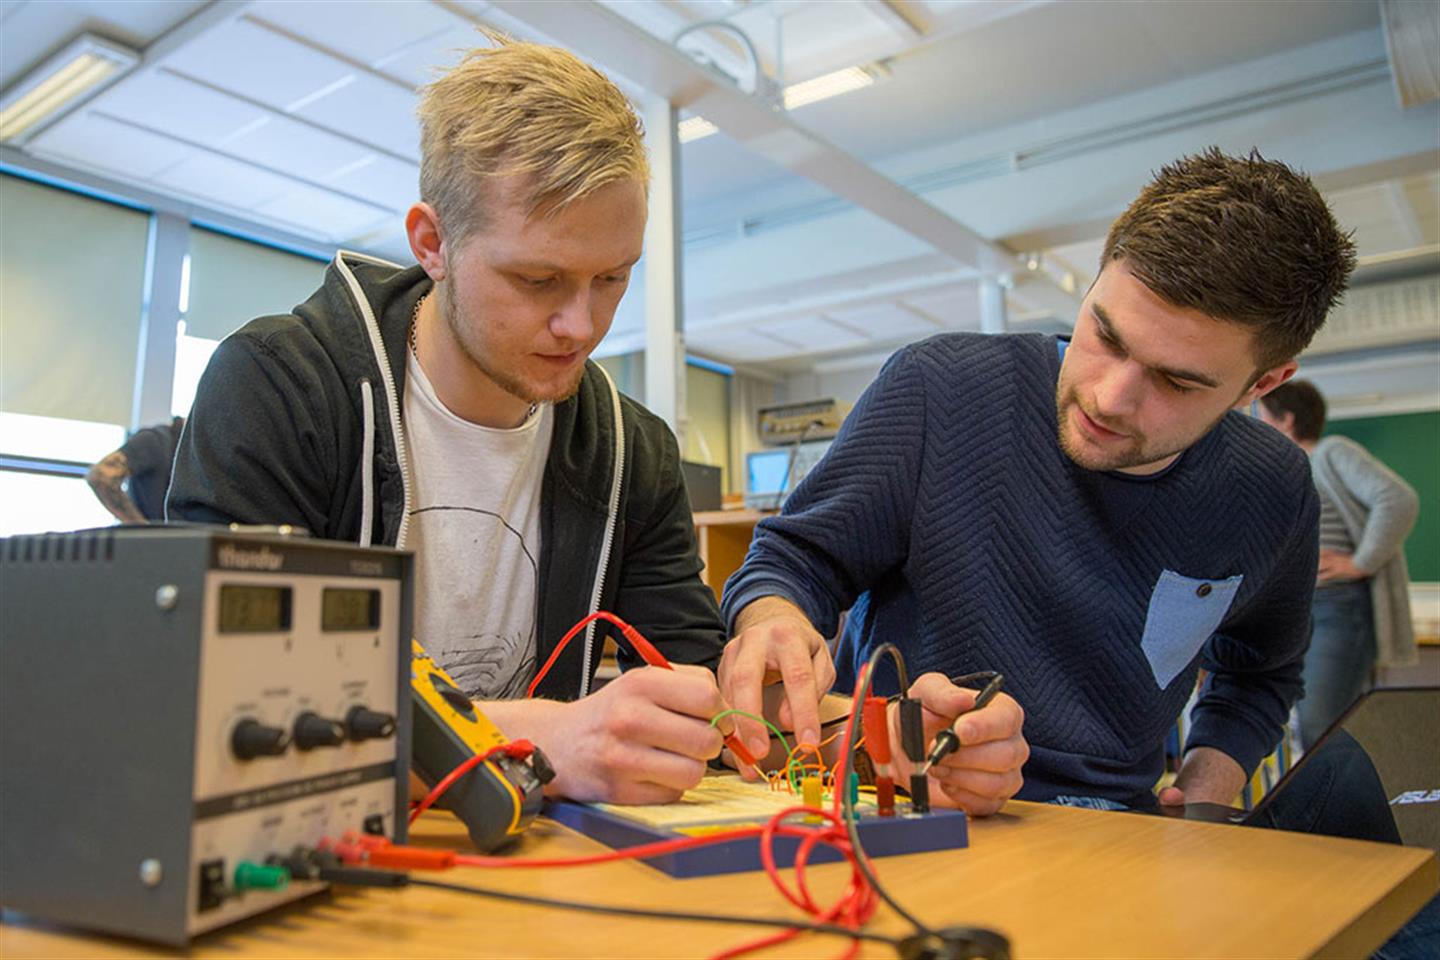 Studentpraksis - få deltidsjobb ved å studere Automatisering og robotikk i Førde